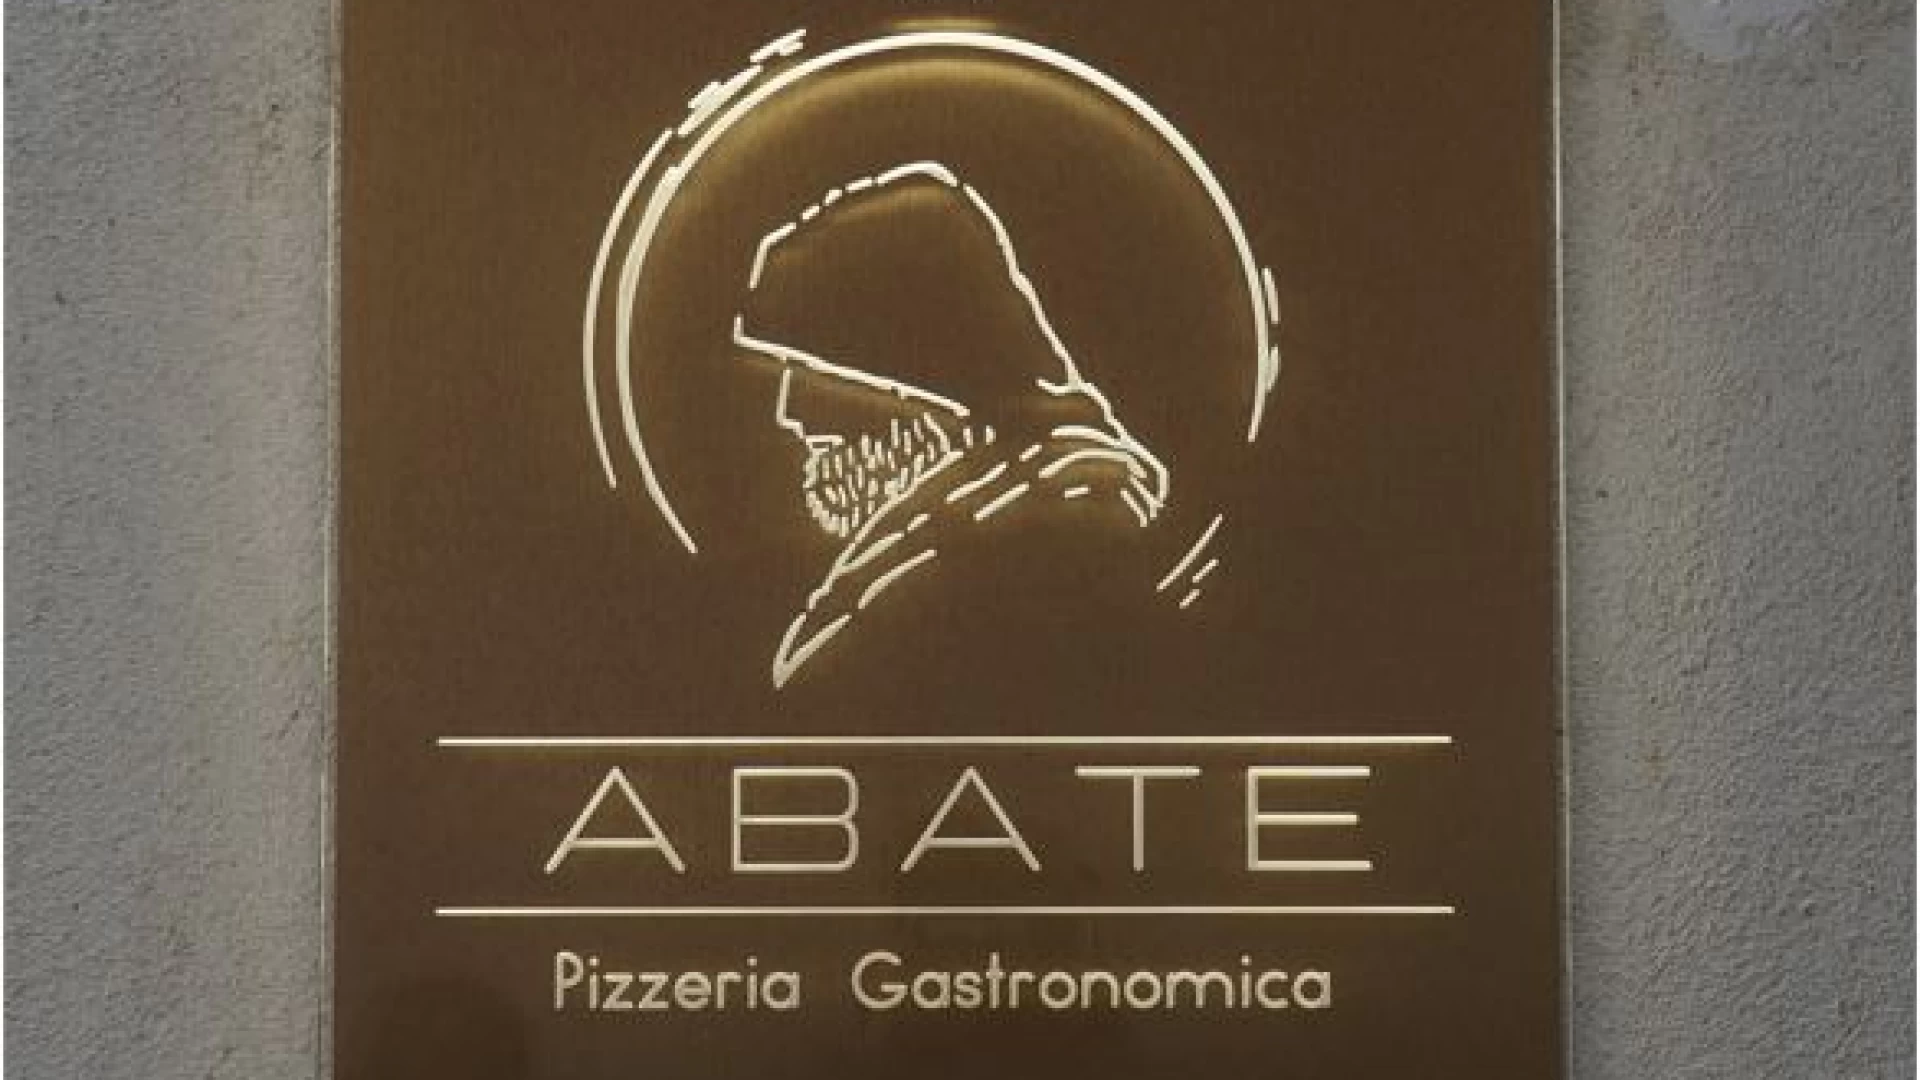 L'inaugurazione della Pizzeria Gastronomica Abate a Castel Di Sangro negli scatti di Angela Rossi